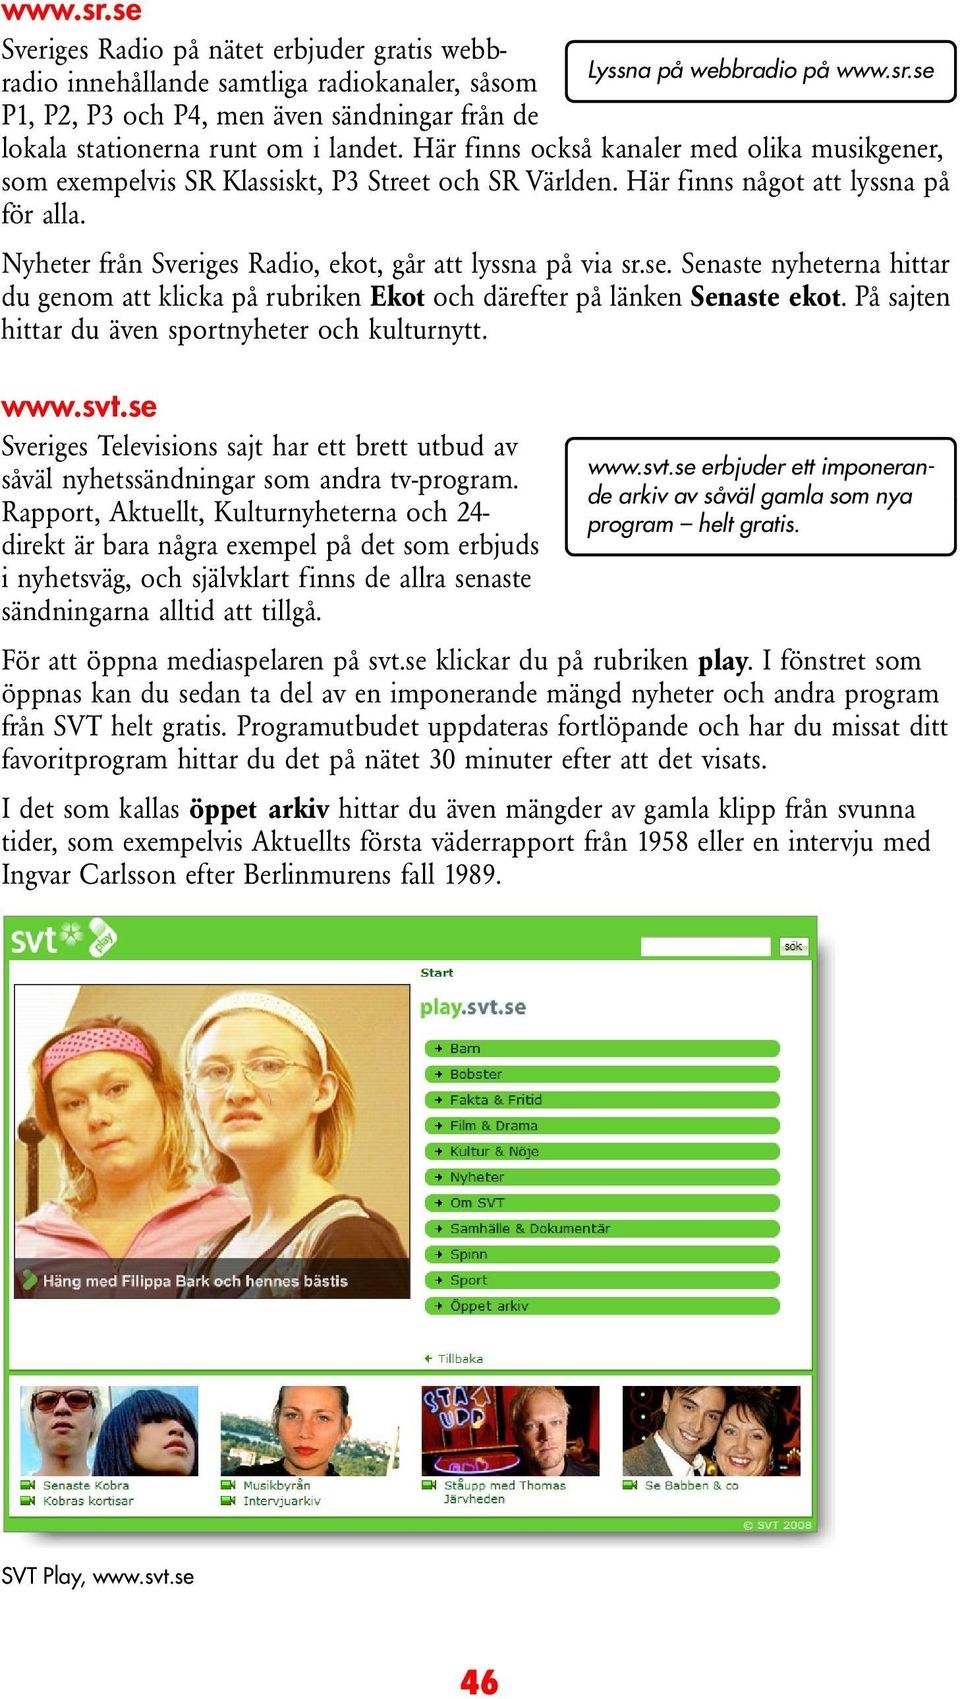 Nyheter från Sveriges Radio, ekot, går att lyssna på via sr.se. Senaste nyheterna hittar du genom att klicka på rubriken Ekot och därefter på länken Senaste ekot.